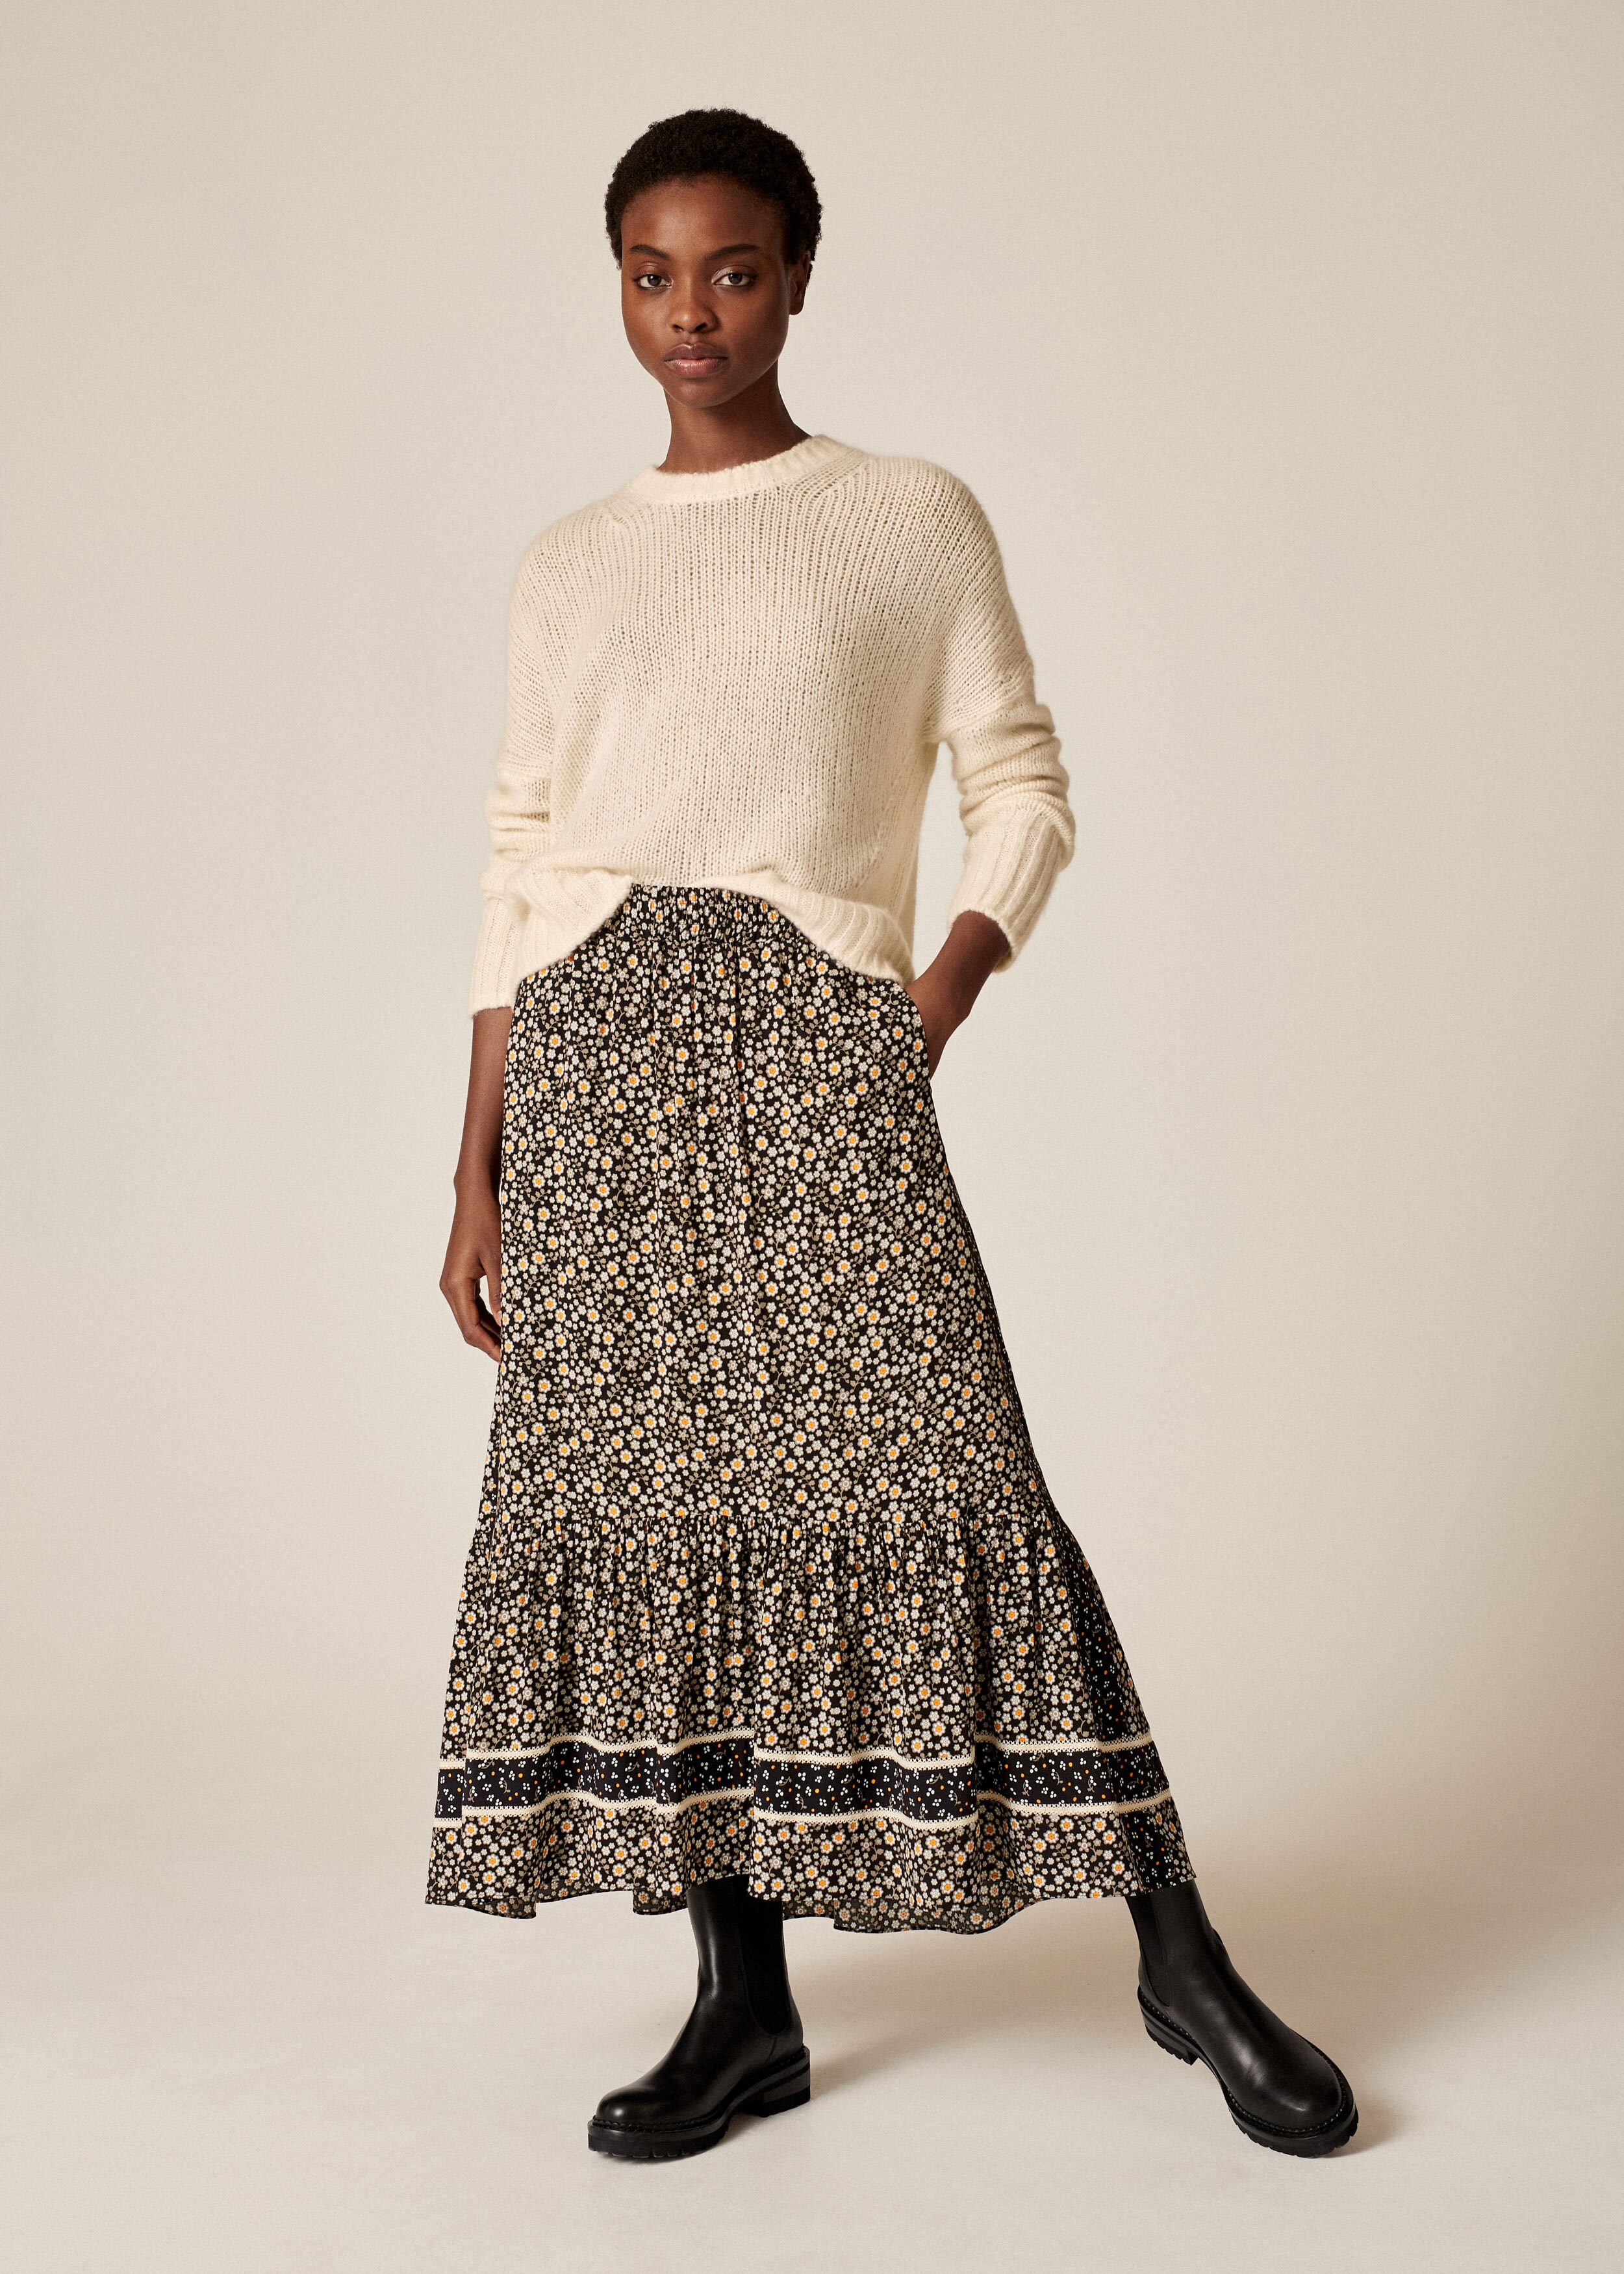 Cutout Floral Crochet Trim Skirt + Belt Black/Otter Grey/Chalk/Marmalade